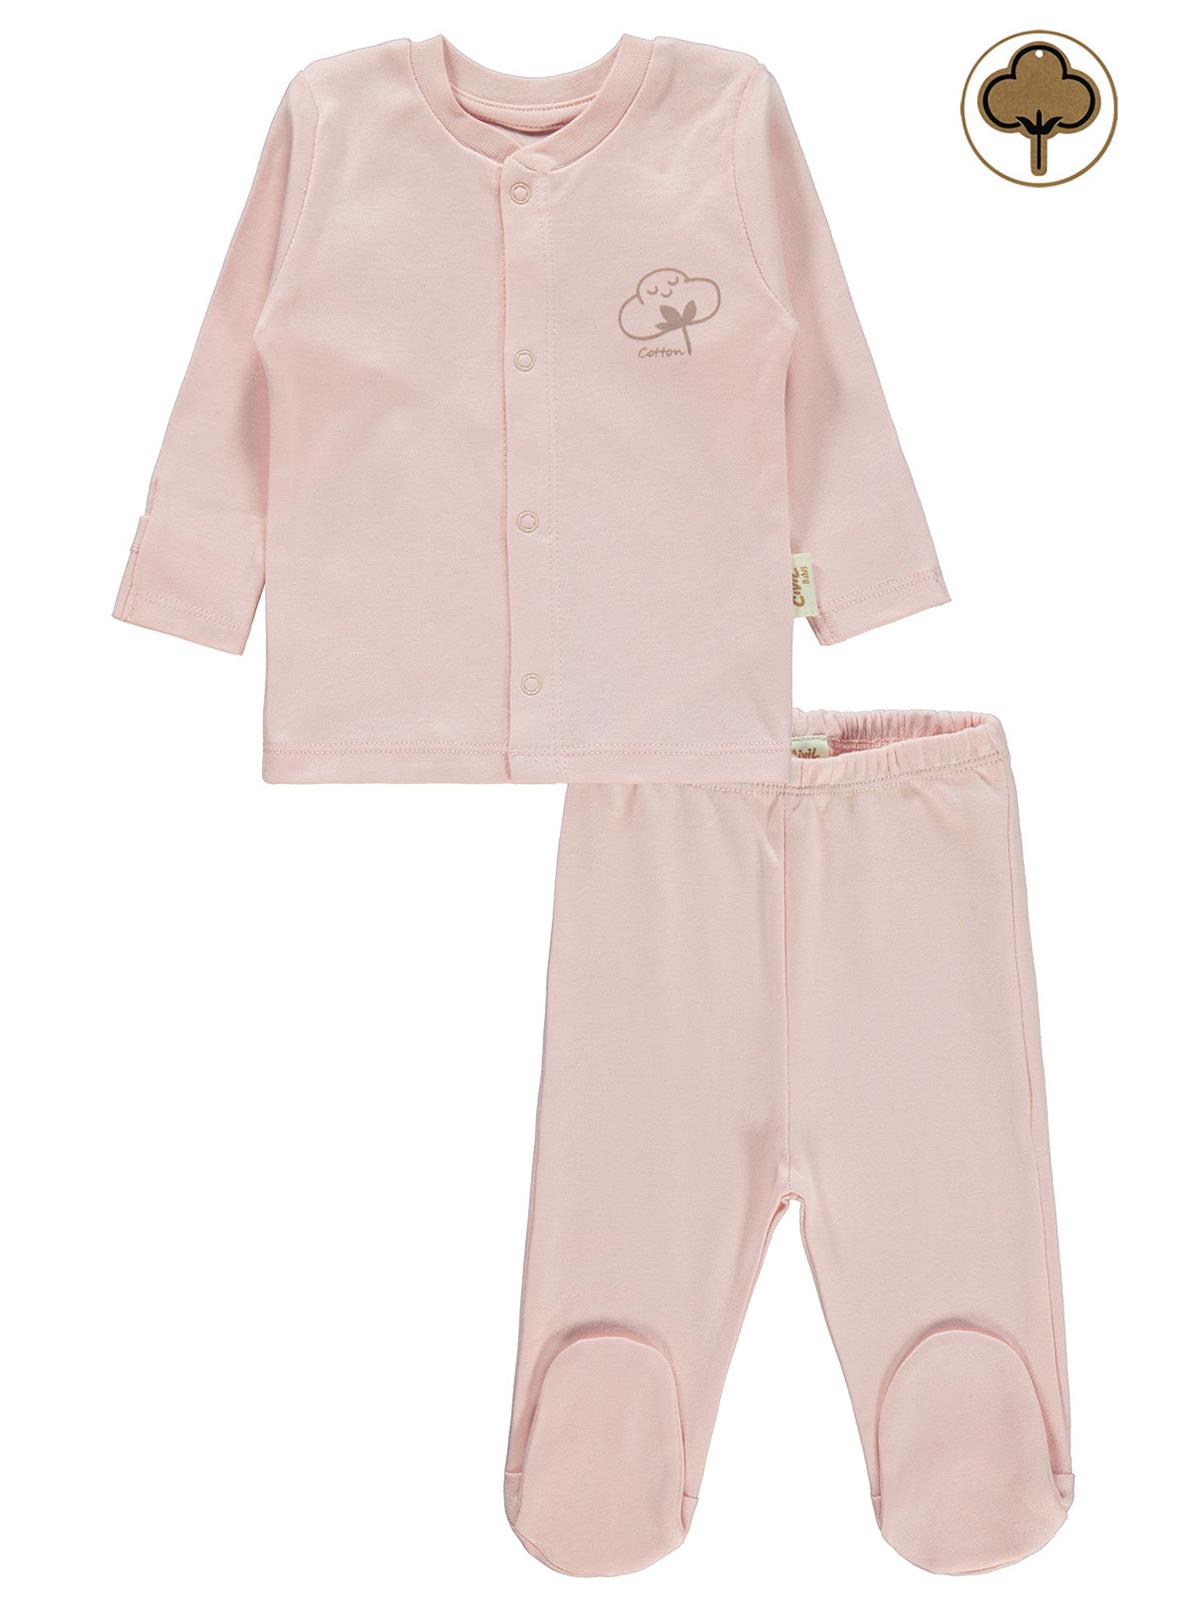 Civil Baby Bebek Organik Pijama Takımı 0-6 Ay Pembe